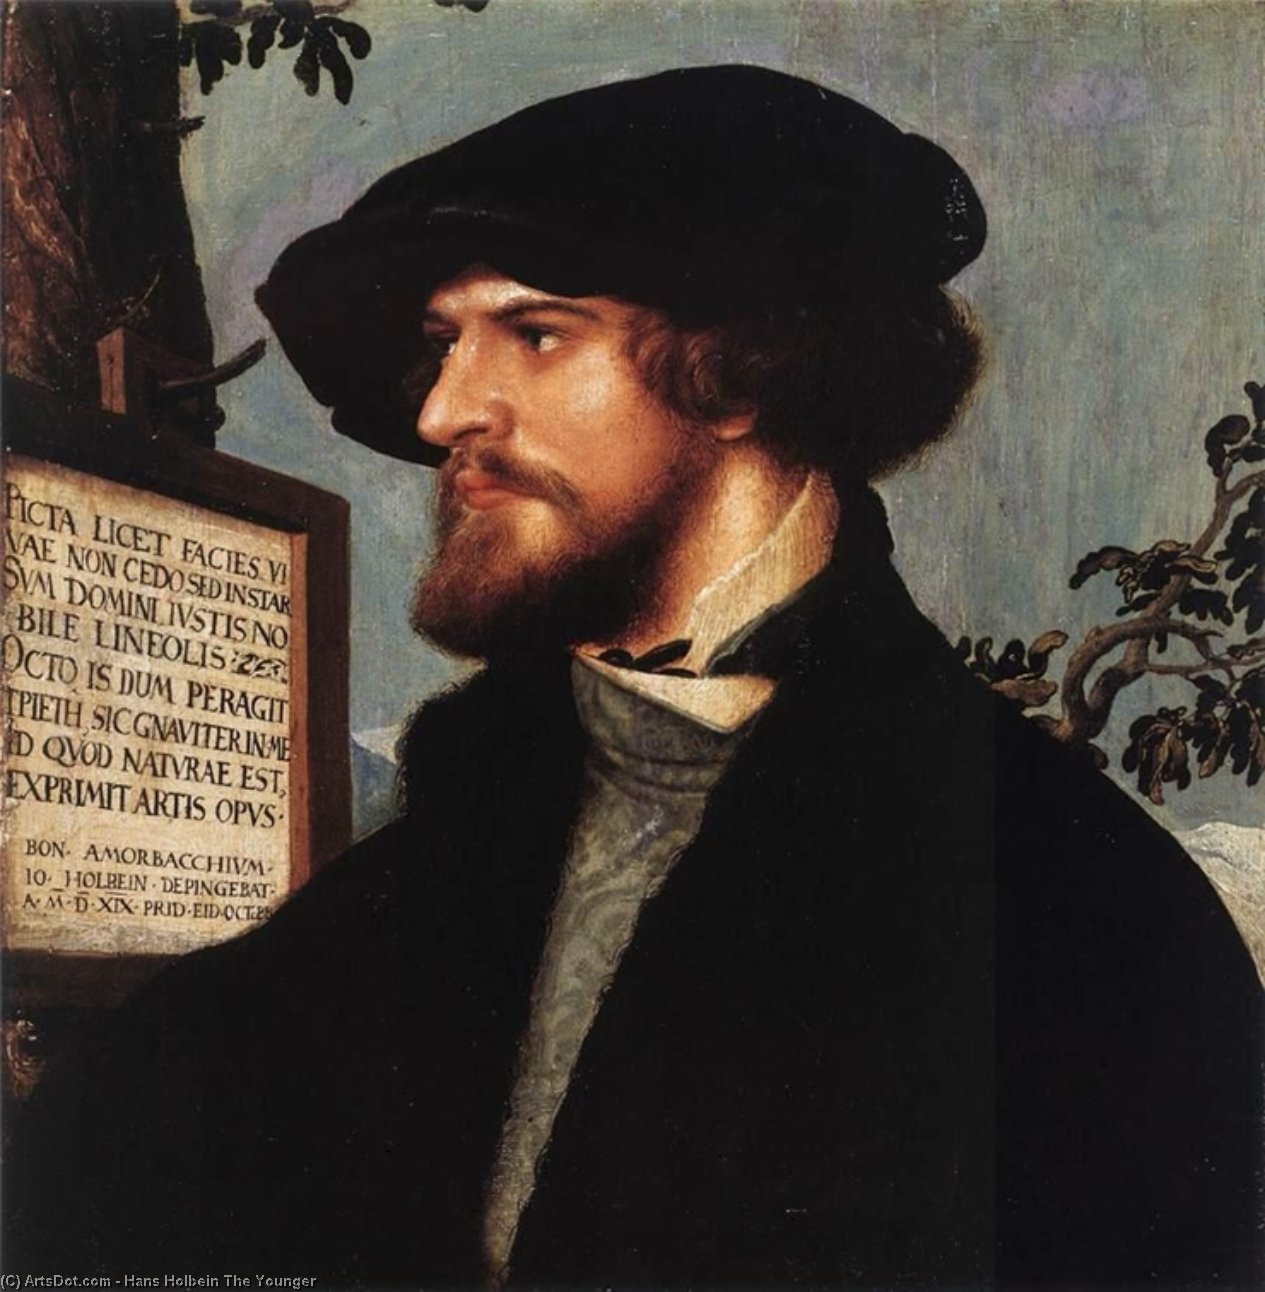 WikiOO.org - Энциклопедия изобразительного искусства - Живопись, Картины  Hans Holbein The Younger - портрет бонифациуса амербаха